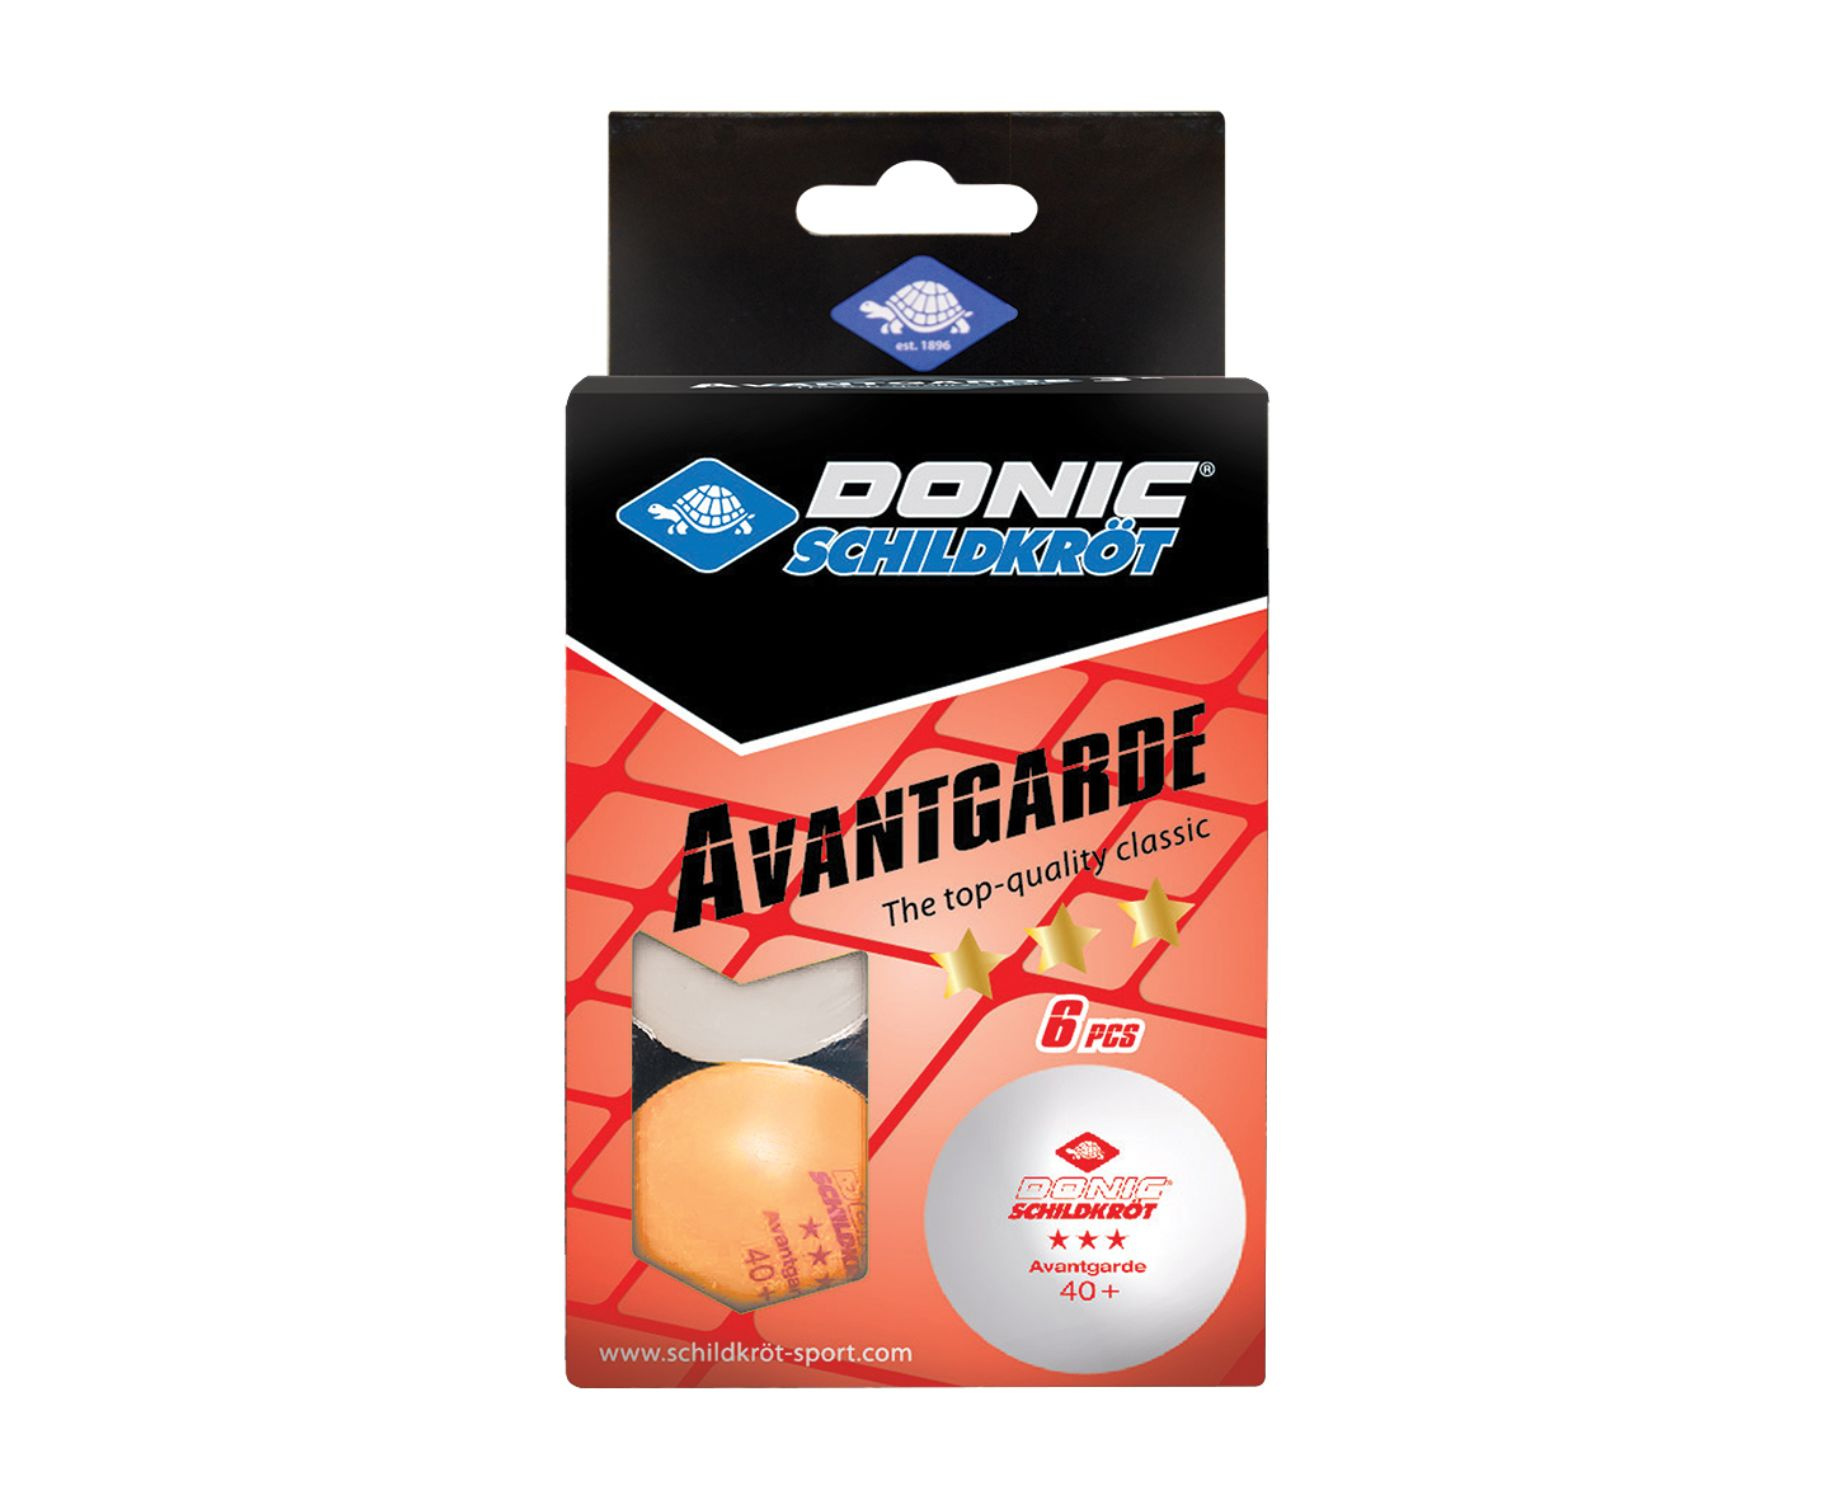 Мяч для настольного тенниса Donic AVANTGARDE 3* 40+, 6 штук, белый + оранжевый